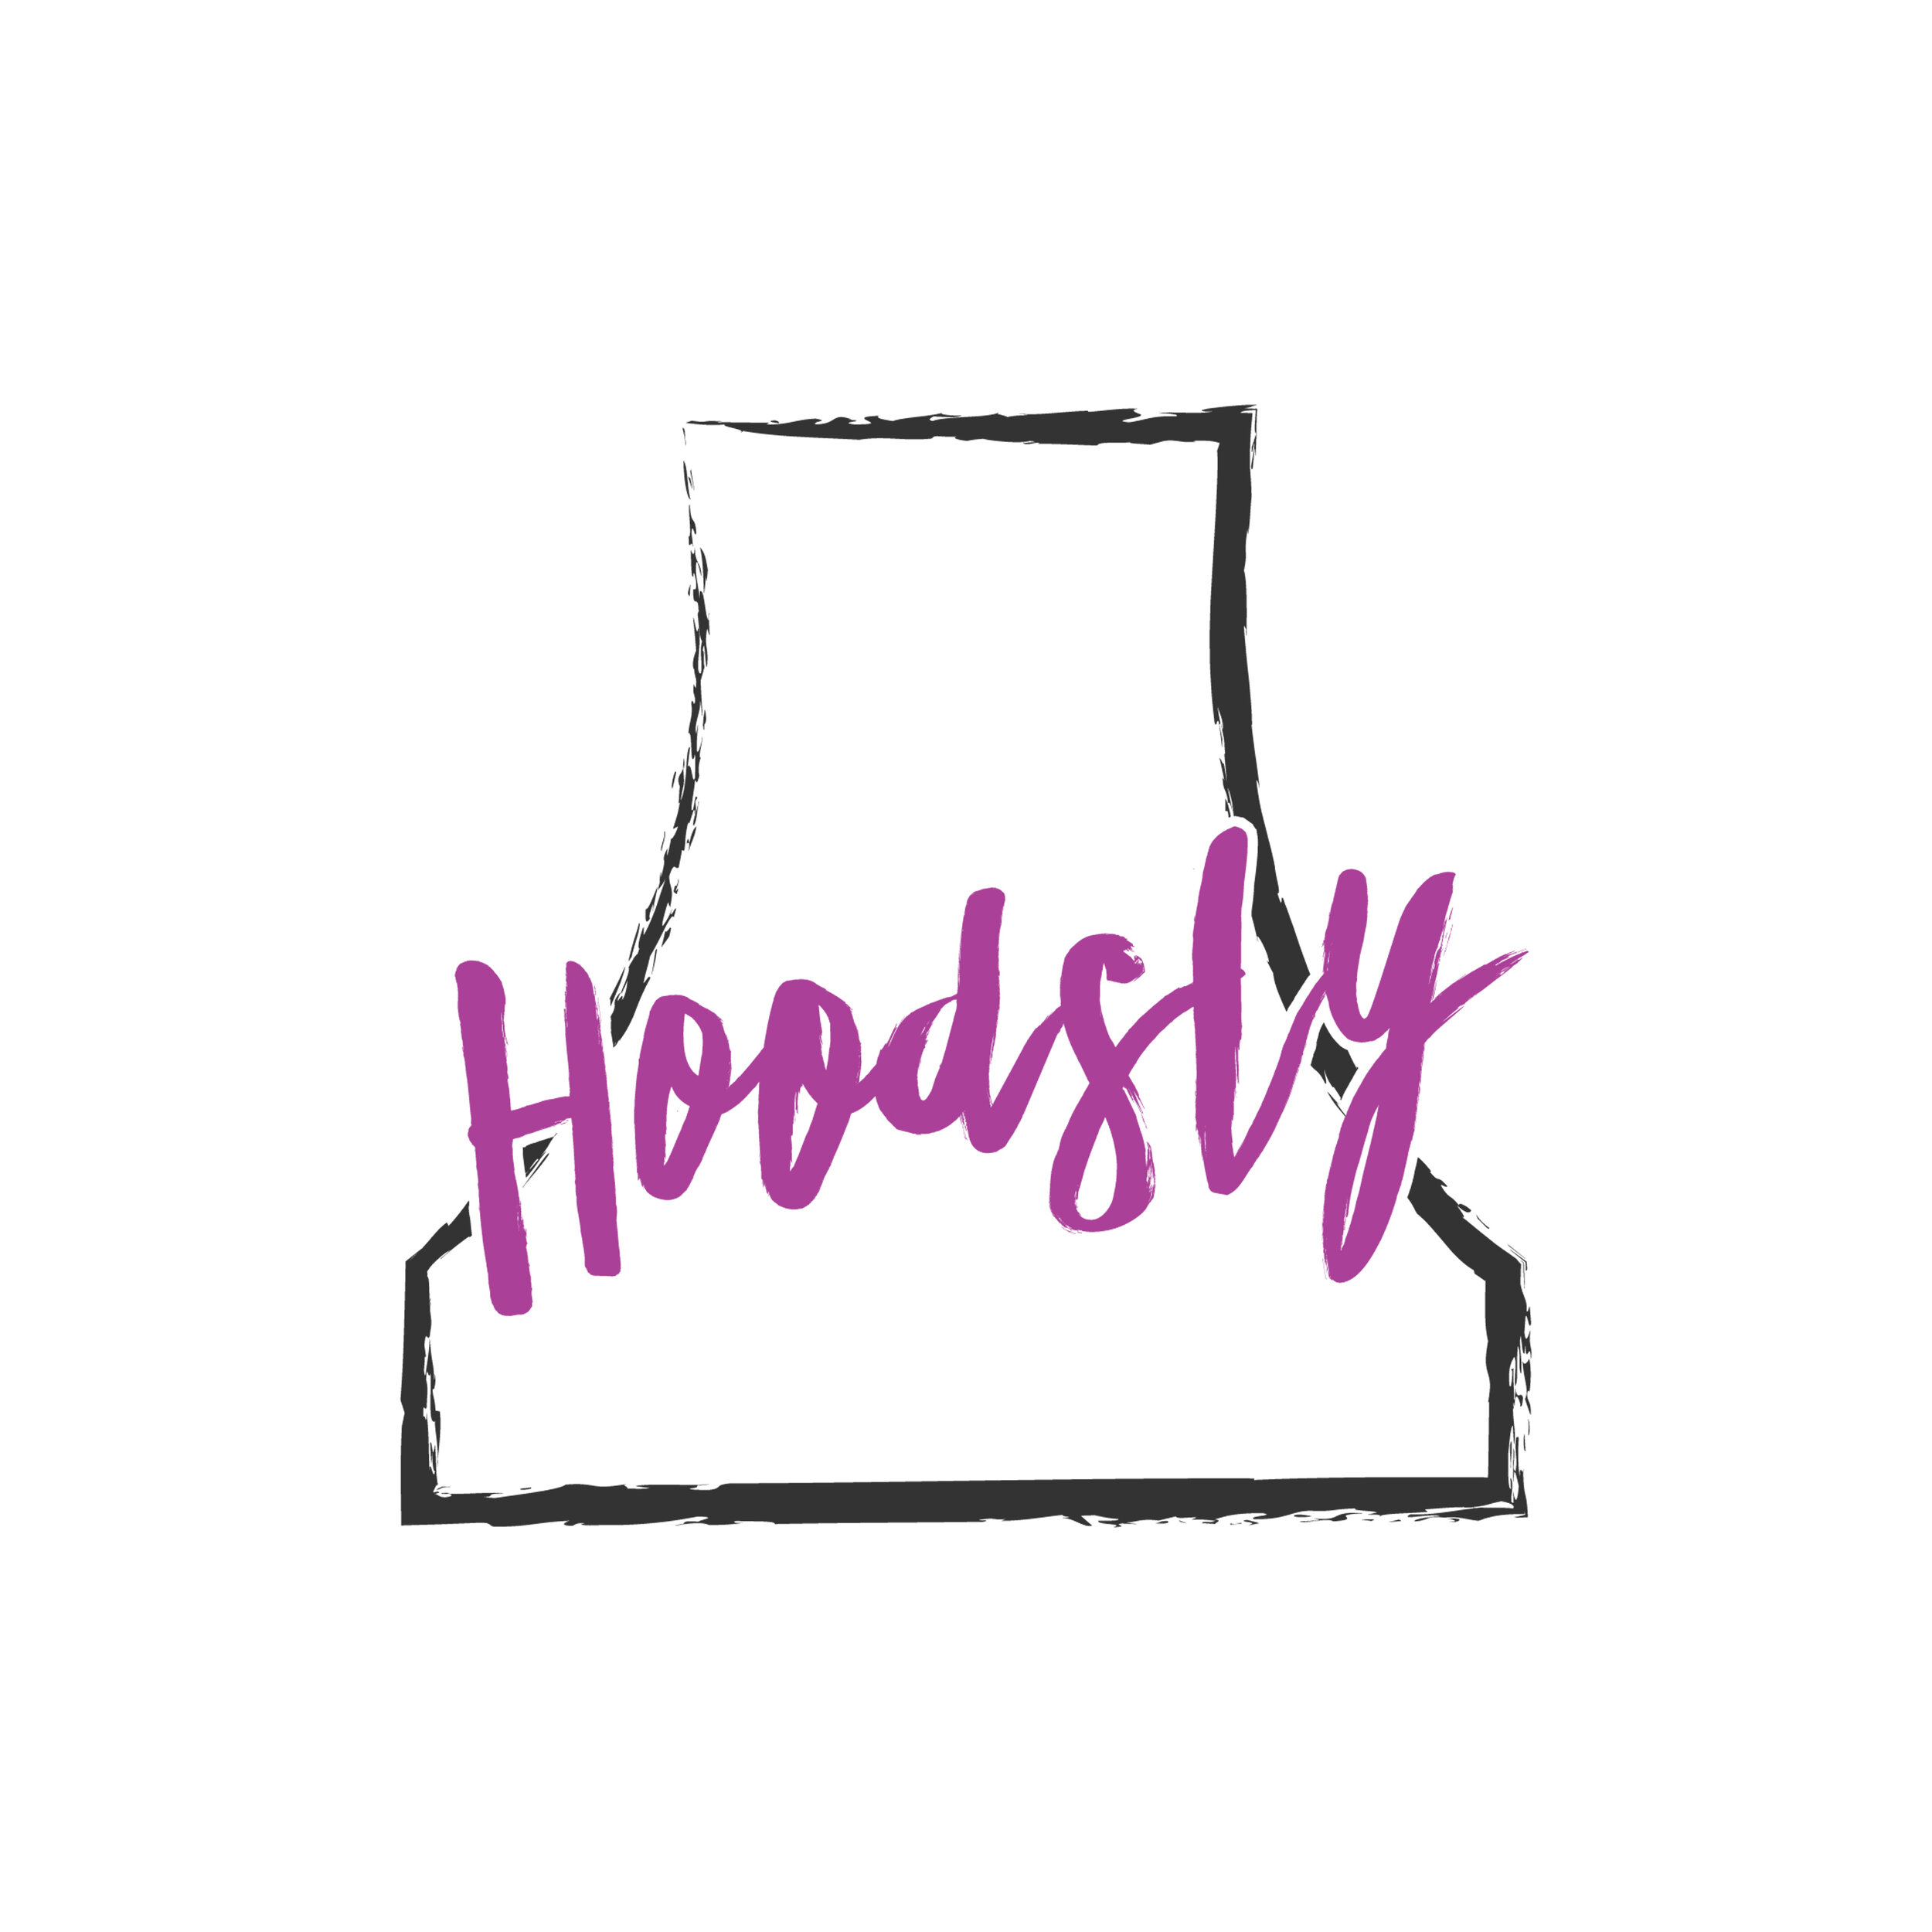 Hoodsly Logo